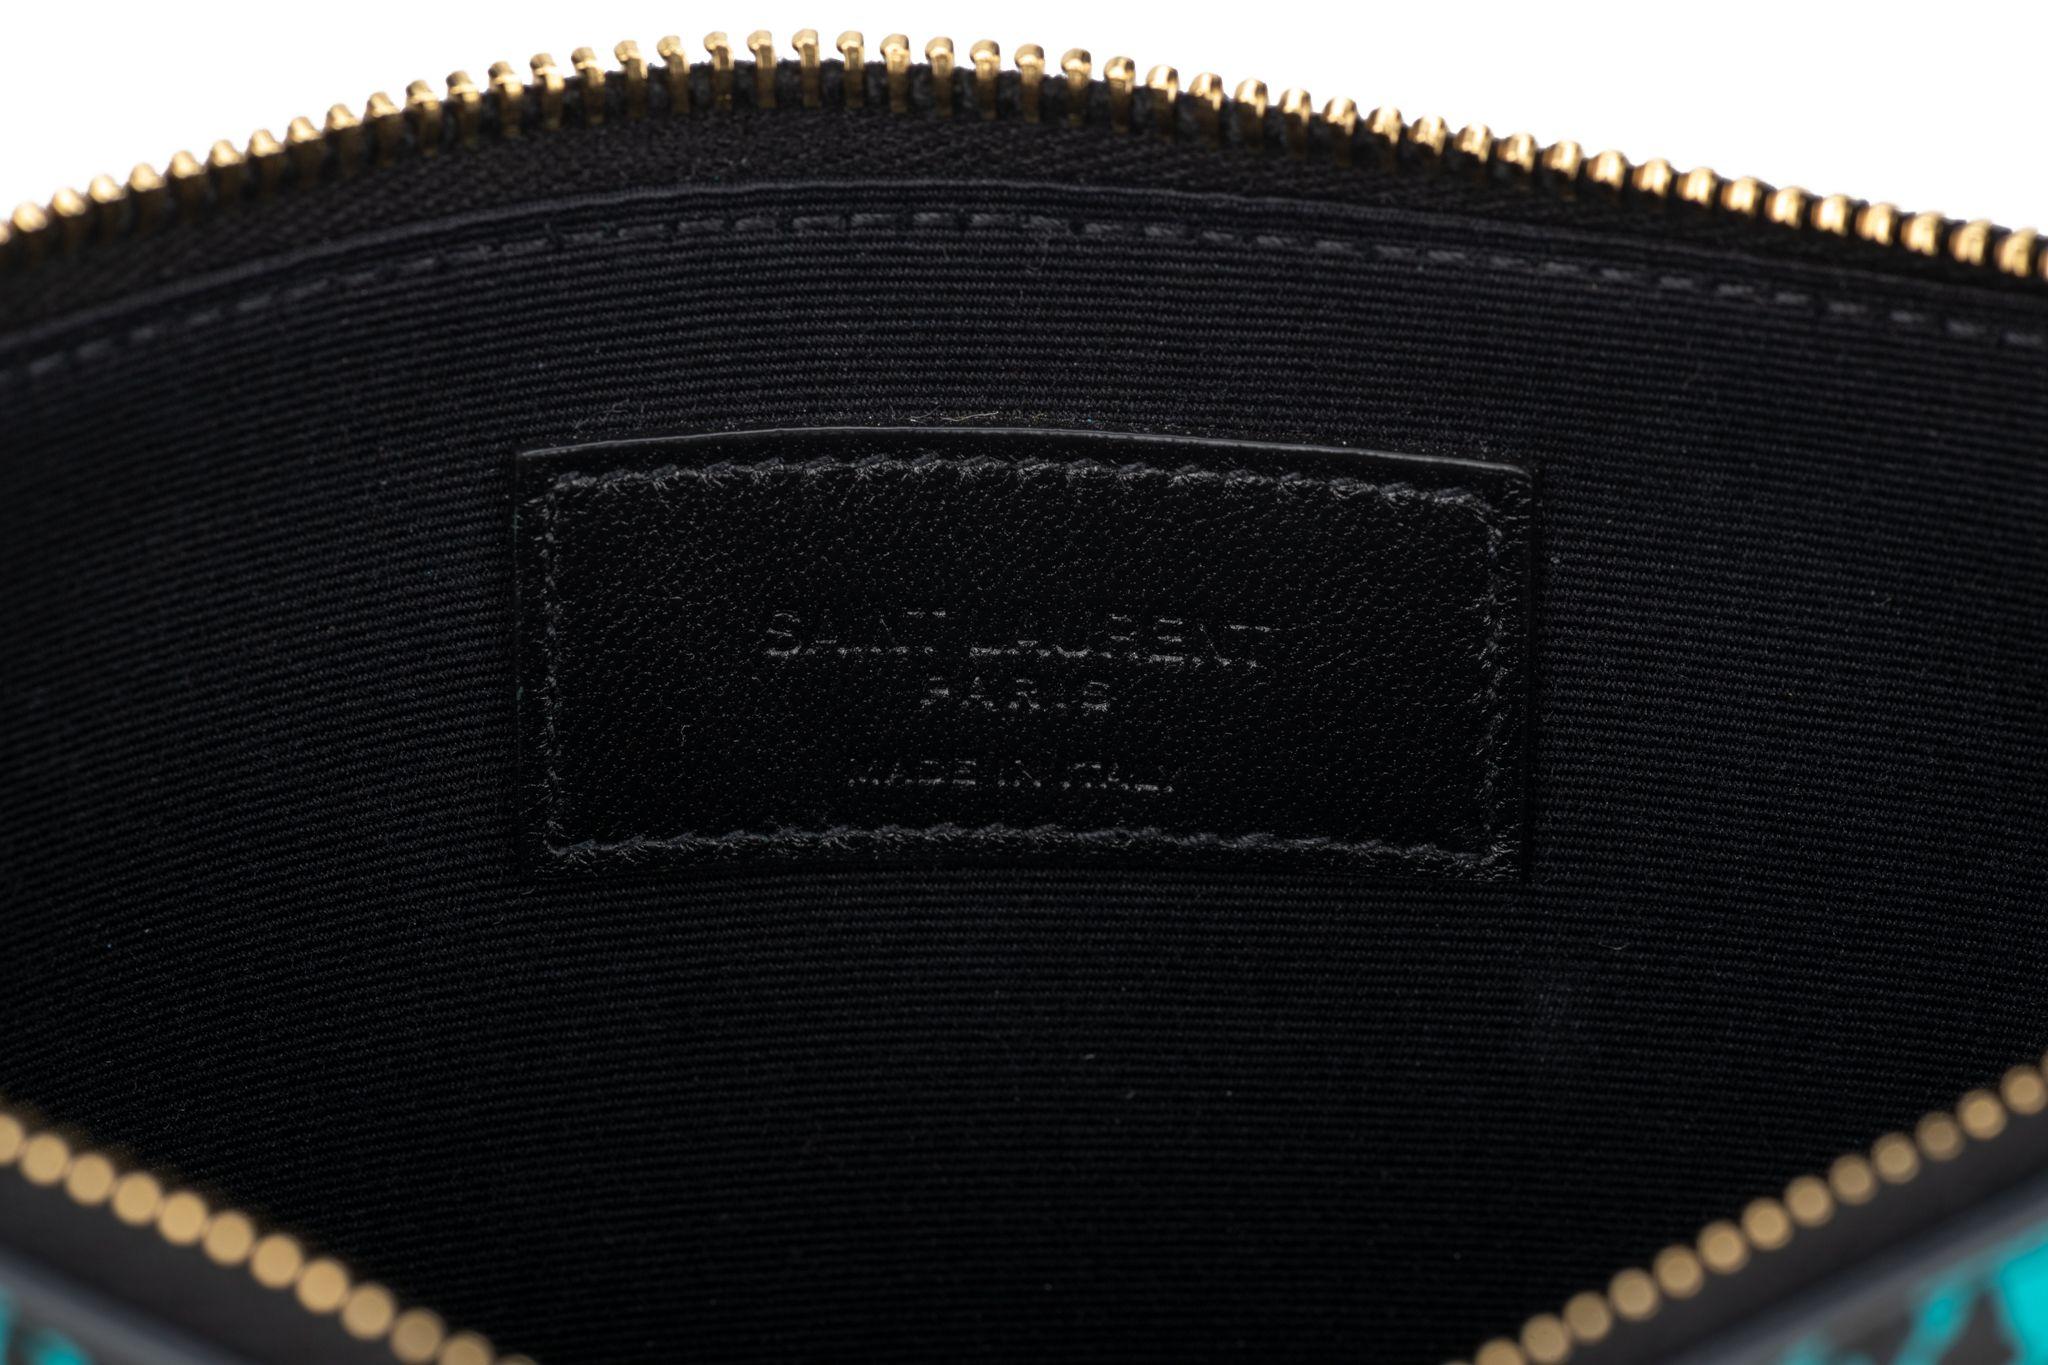 Pochette Yves Saint Laurent en cuir de veau lisse à motif léopard/cœur. Le logo Saint Laurent Paris est imprimé en or. La fermeture à glissière dorée sur le dessus s'ouvre sur un intérieur en tissu noir. La pièce est neuve et est accompagnée du